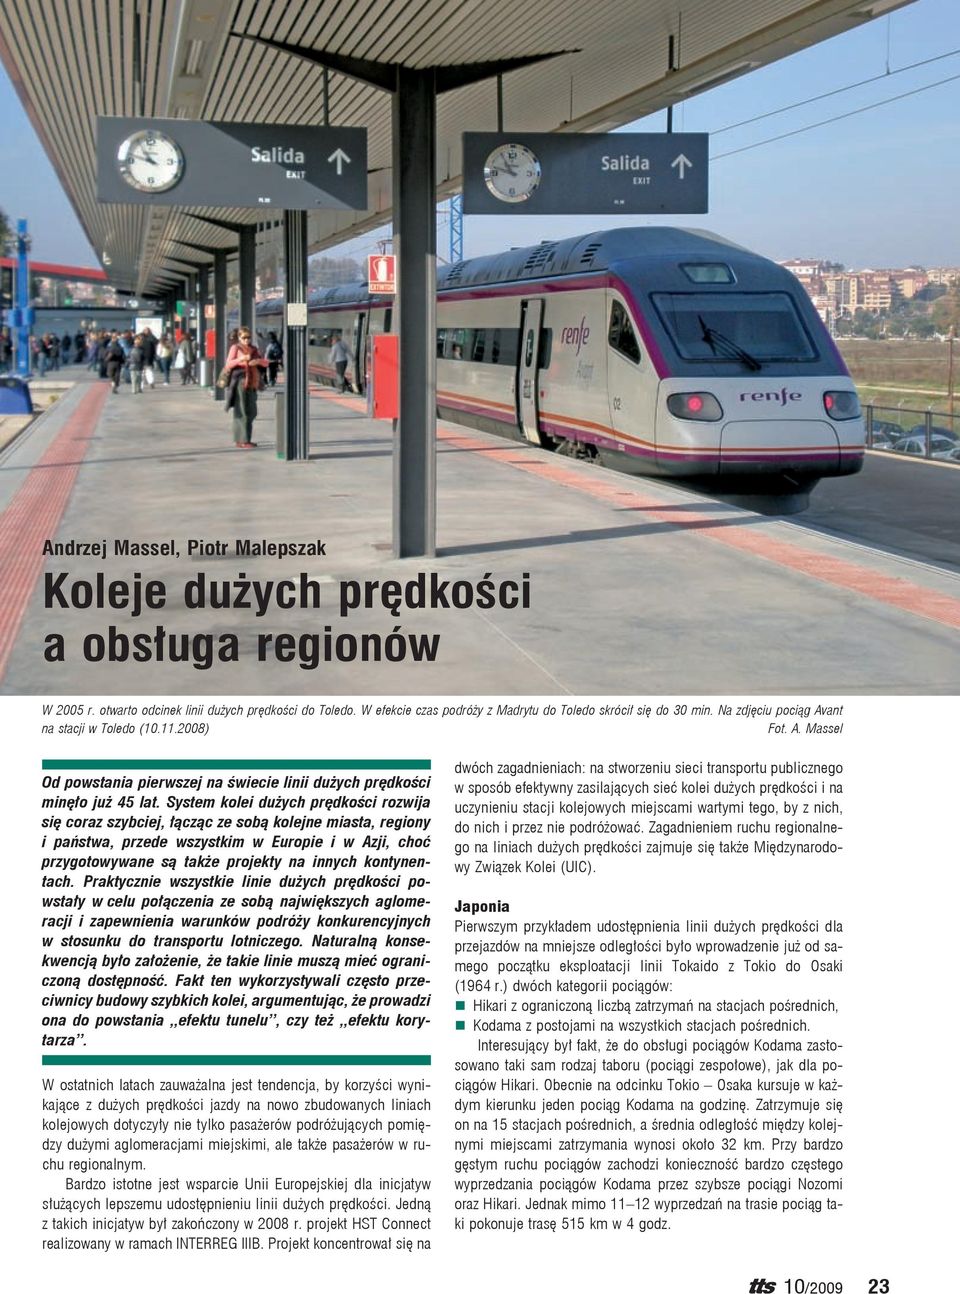 System kolei dużych prędkości rozwija się coraz szybciej, łącząc ze sobą kolejne miasta, regiony i państwa, przede wszystkim w Europie i w Azji, choć przygotowywane są także projekty na innych